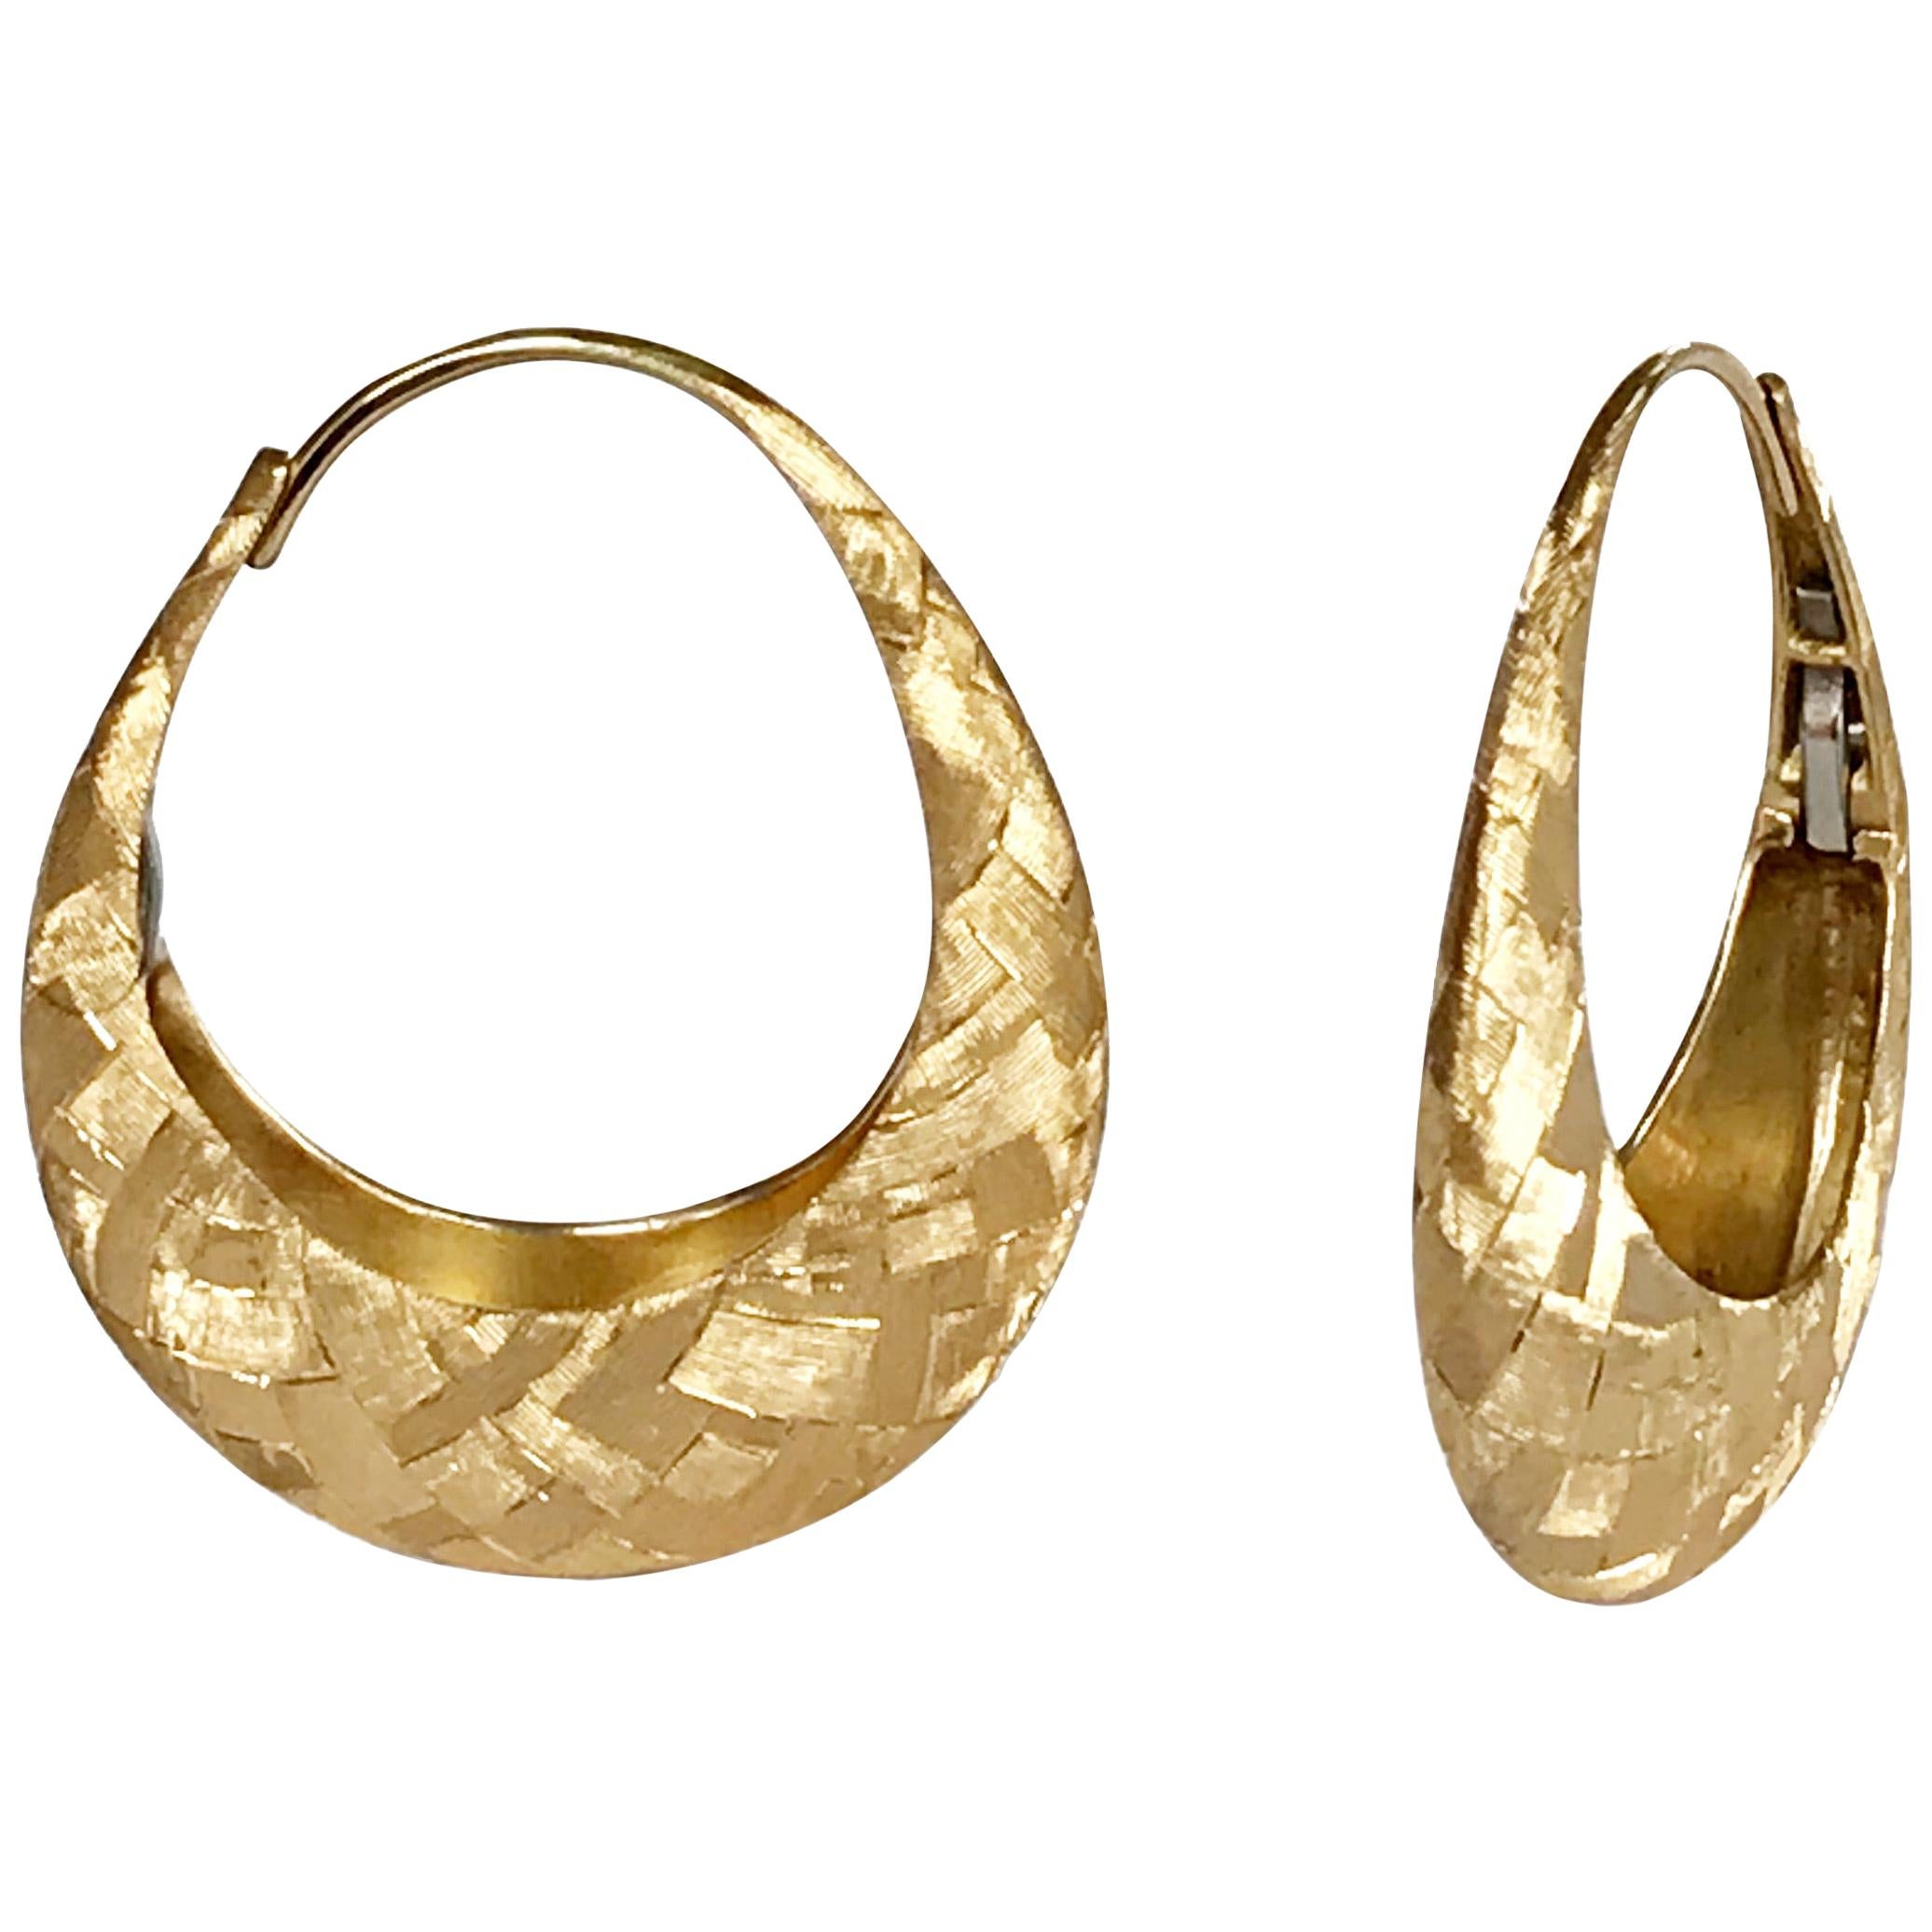 Dalben Hand Engraved Hoop Gold Earrings